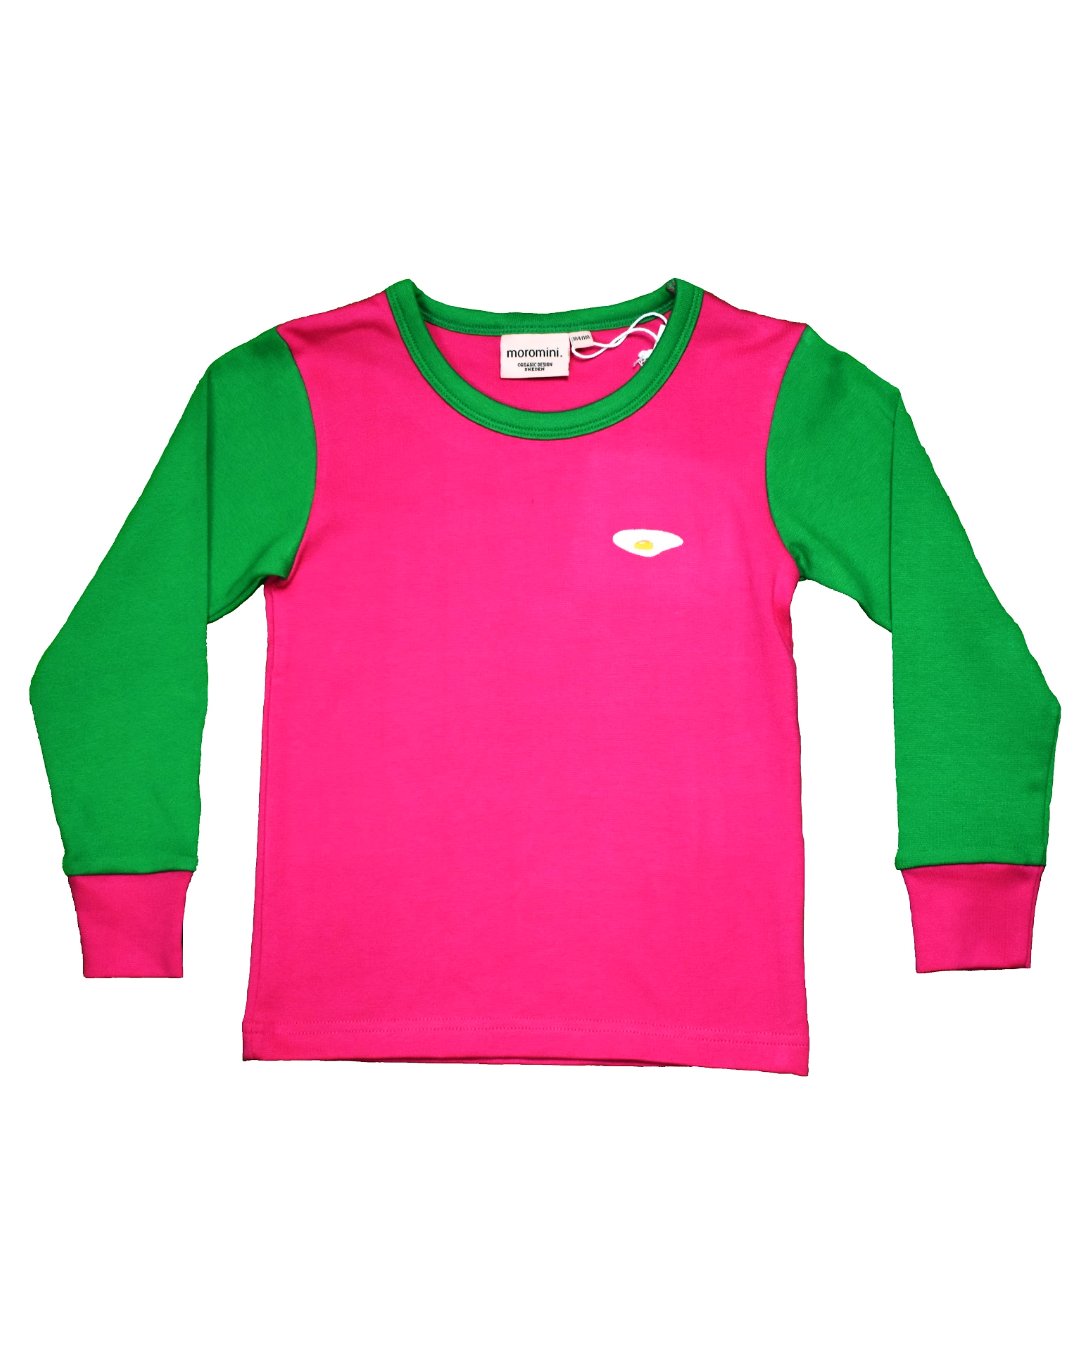 Waste Shirt PINK/GREEN - Damen - moromini